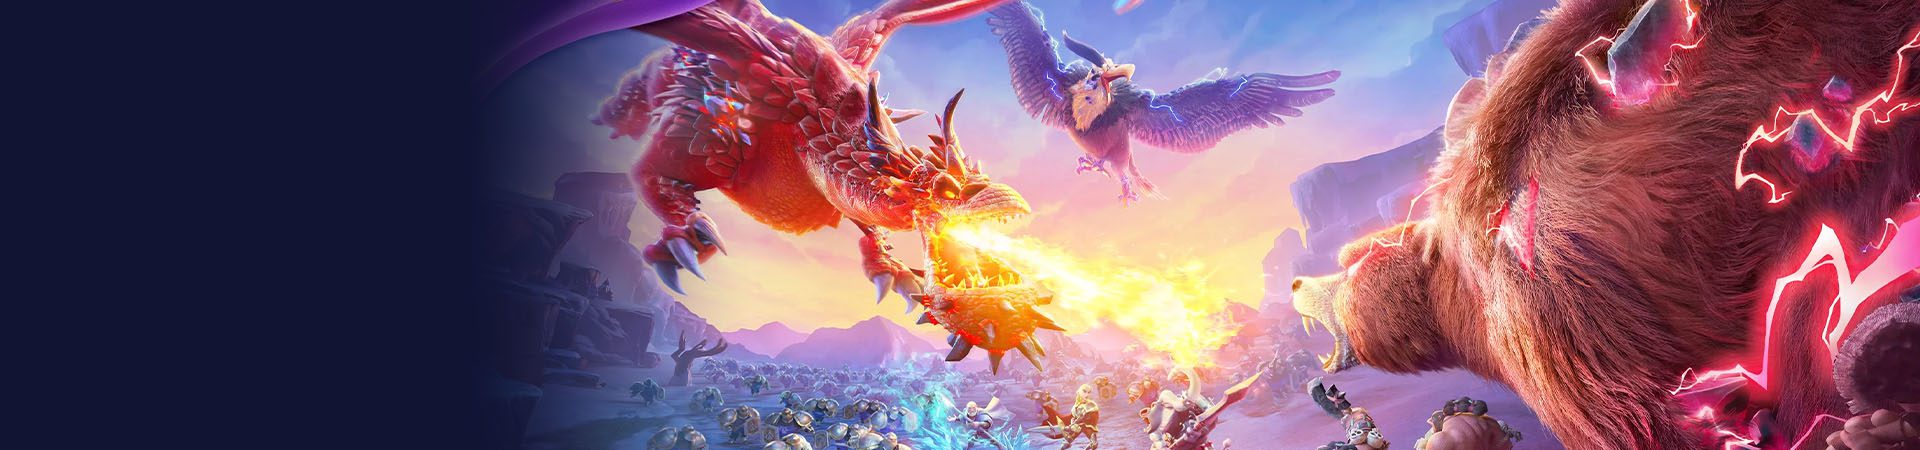 Veröffentlichung von Call of Dragons, dem strategischen MMO von Lilith Games nach RoK banner